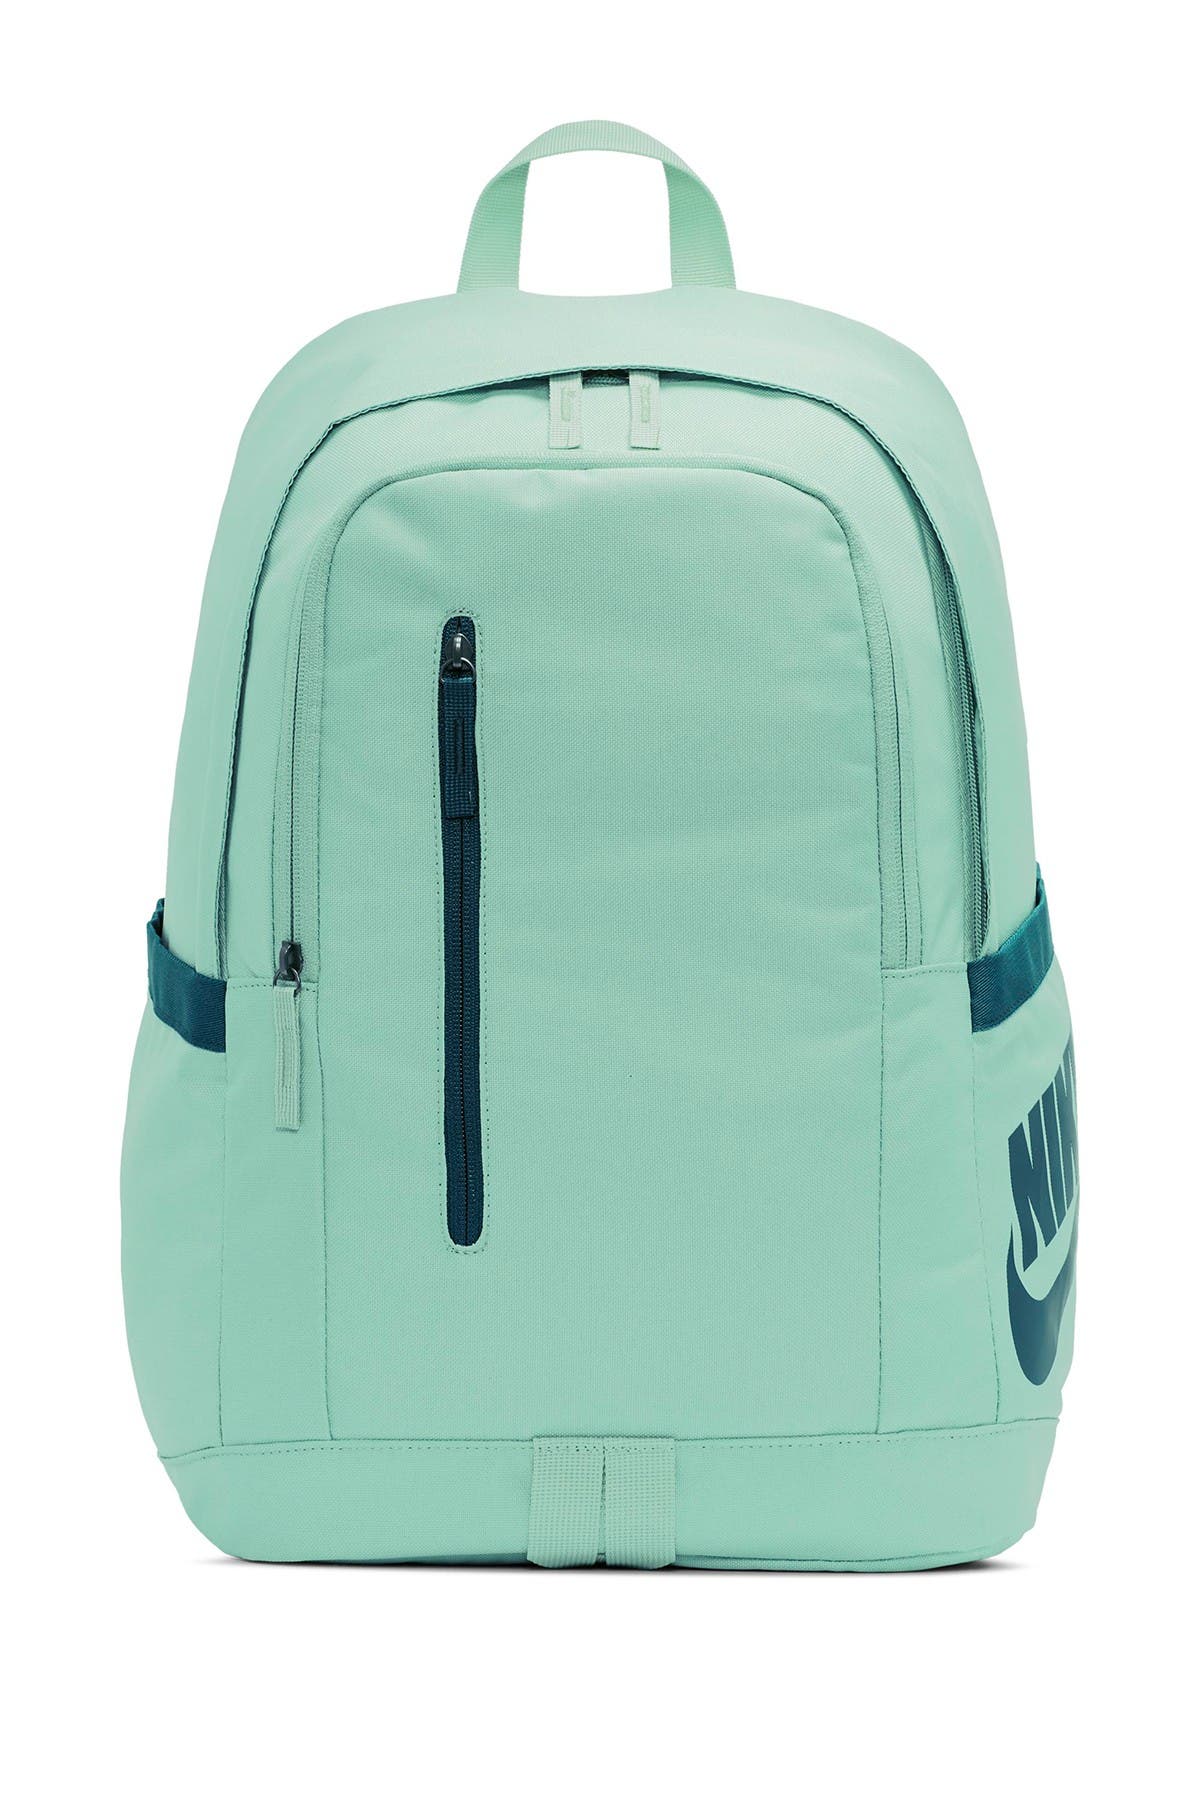 nike green backpack